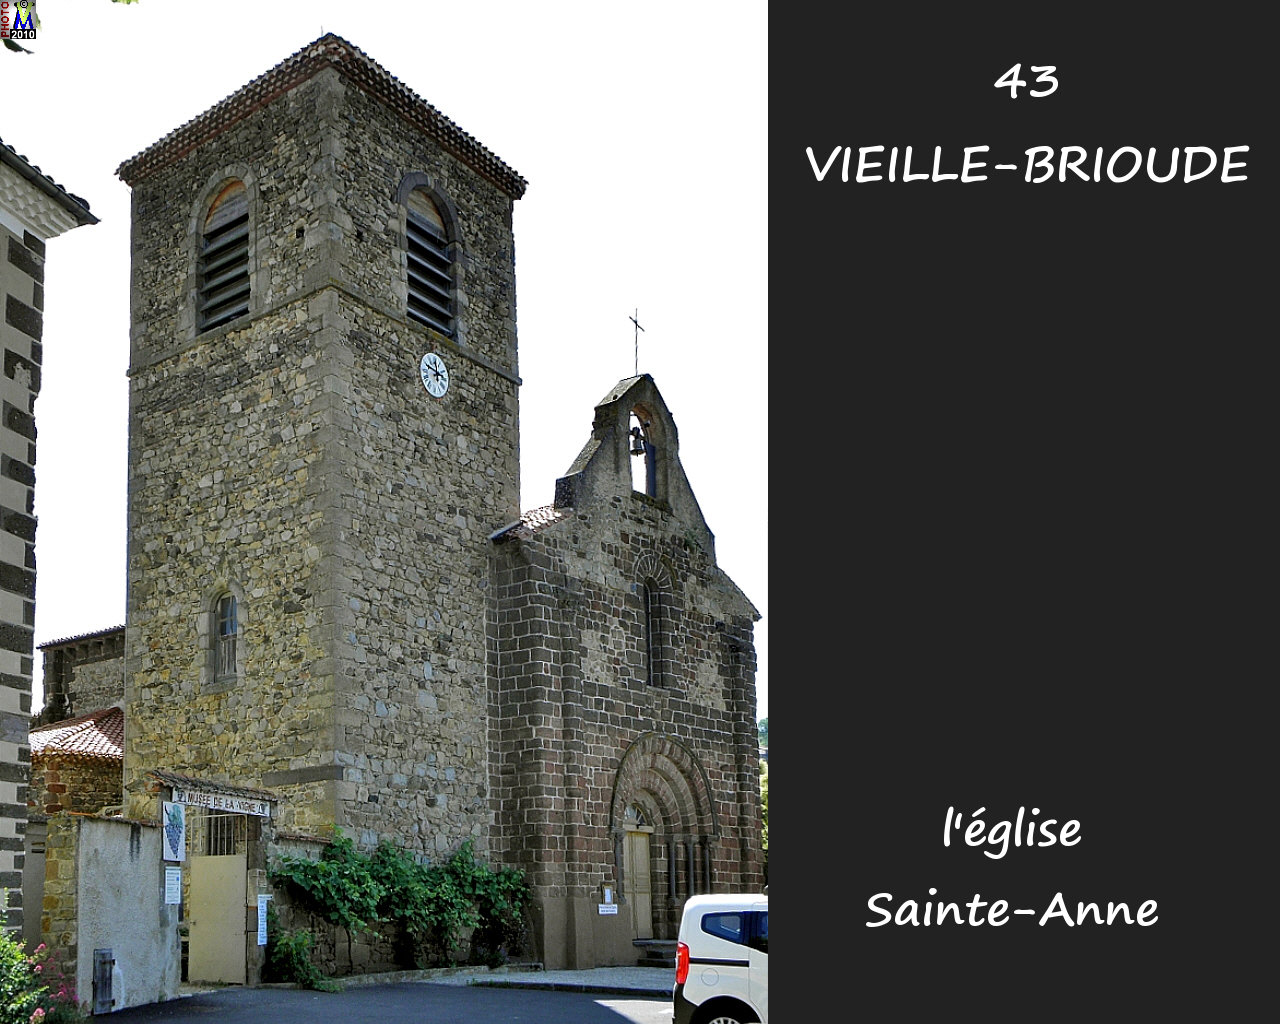 43VIEILLE-BRIOUDE_eglise_110.jpg